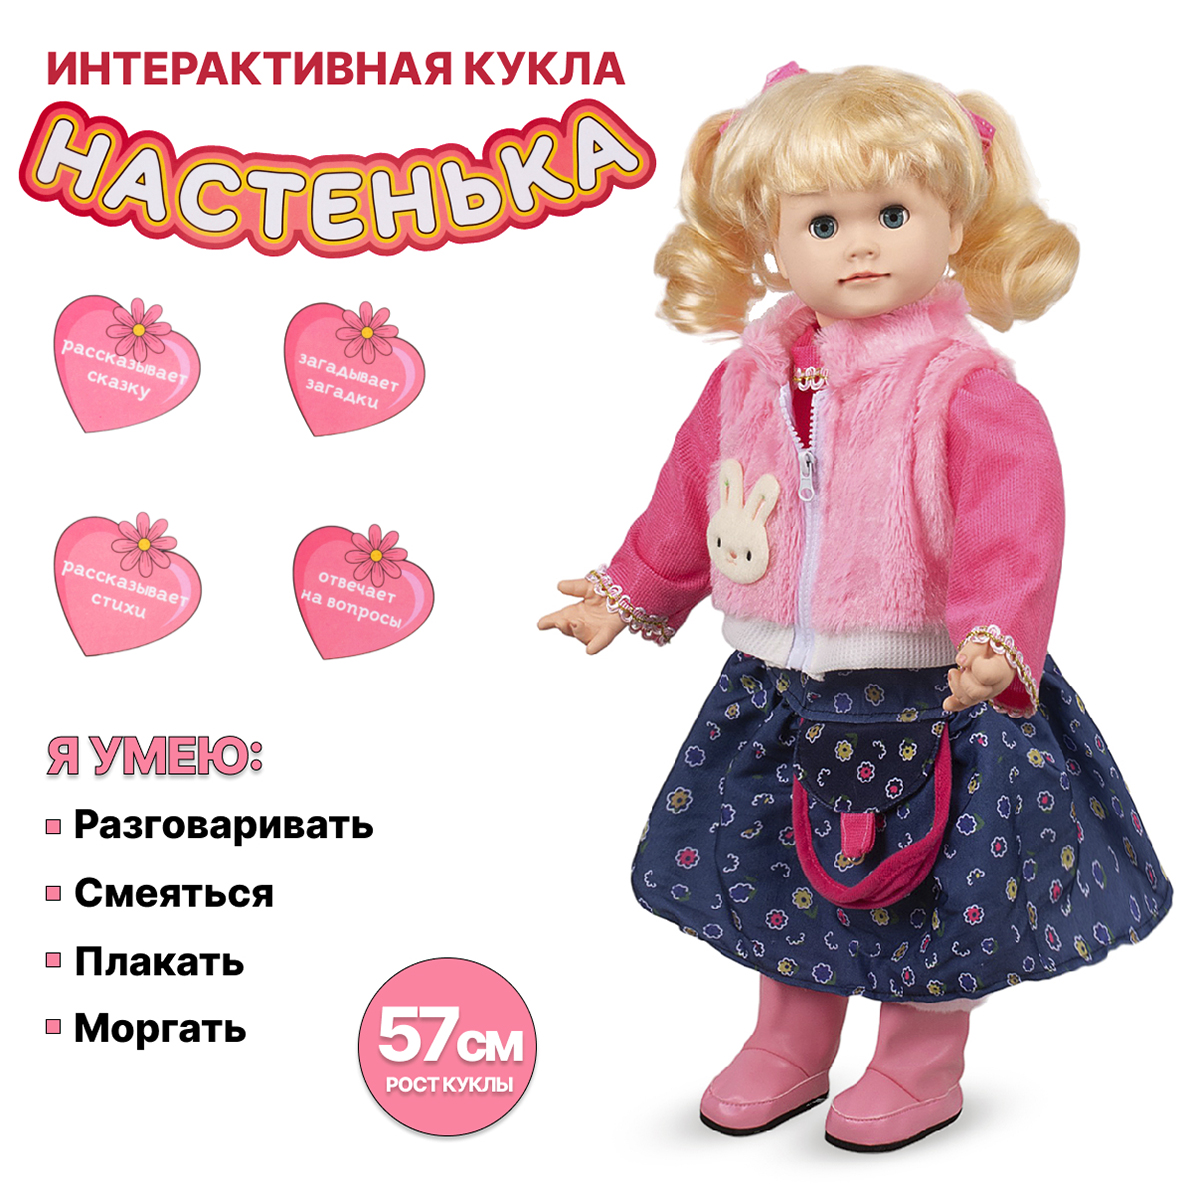 Интерактивная кукла Tongde Настенька 57см YM-5